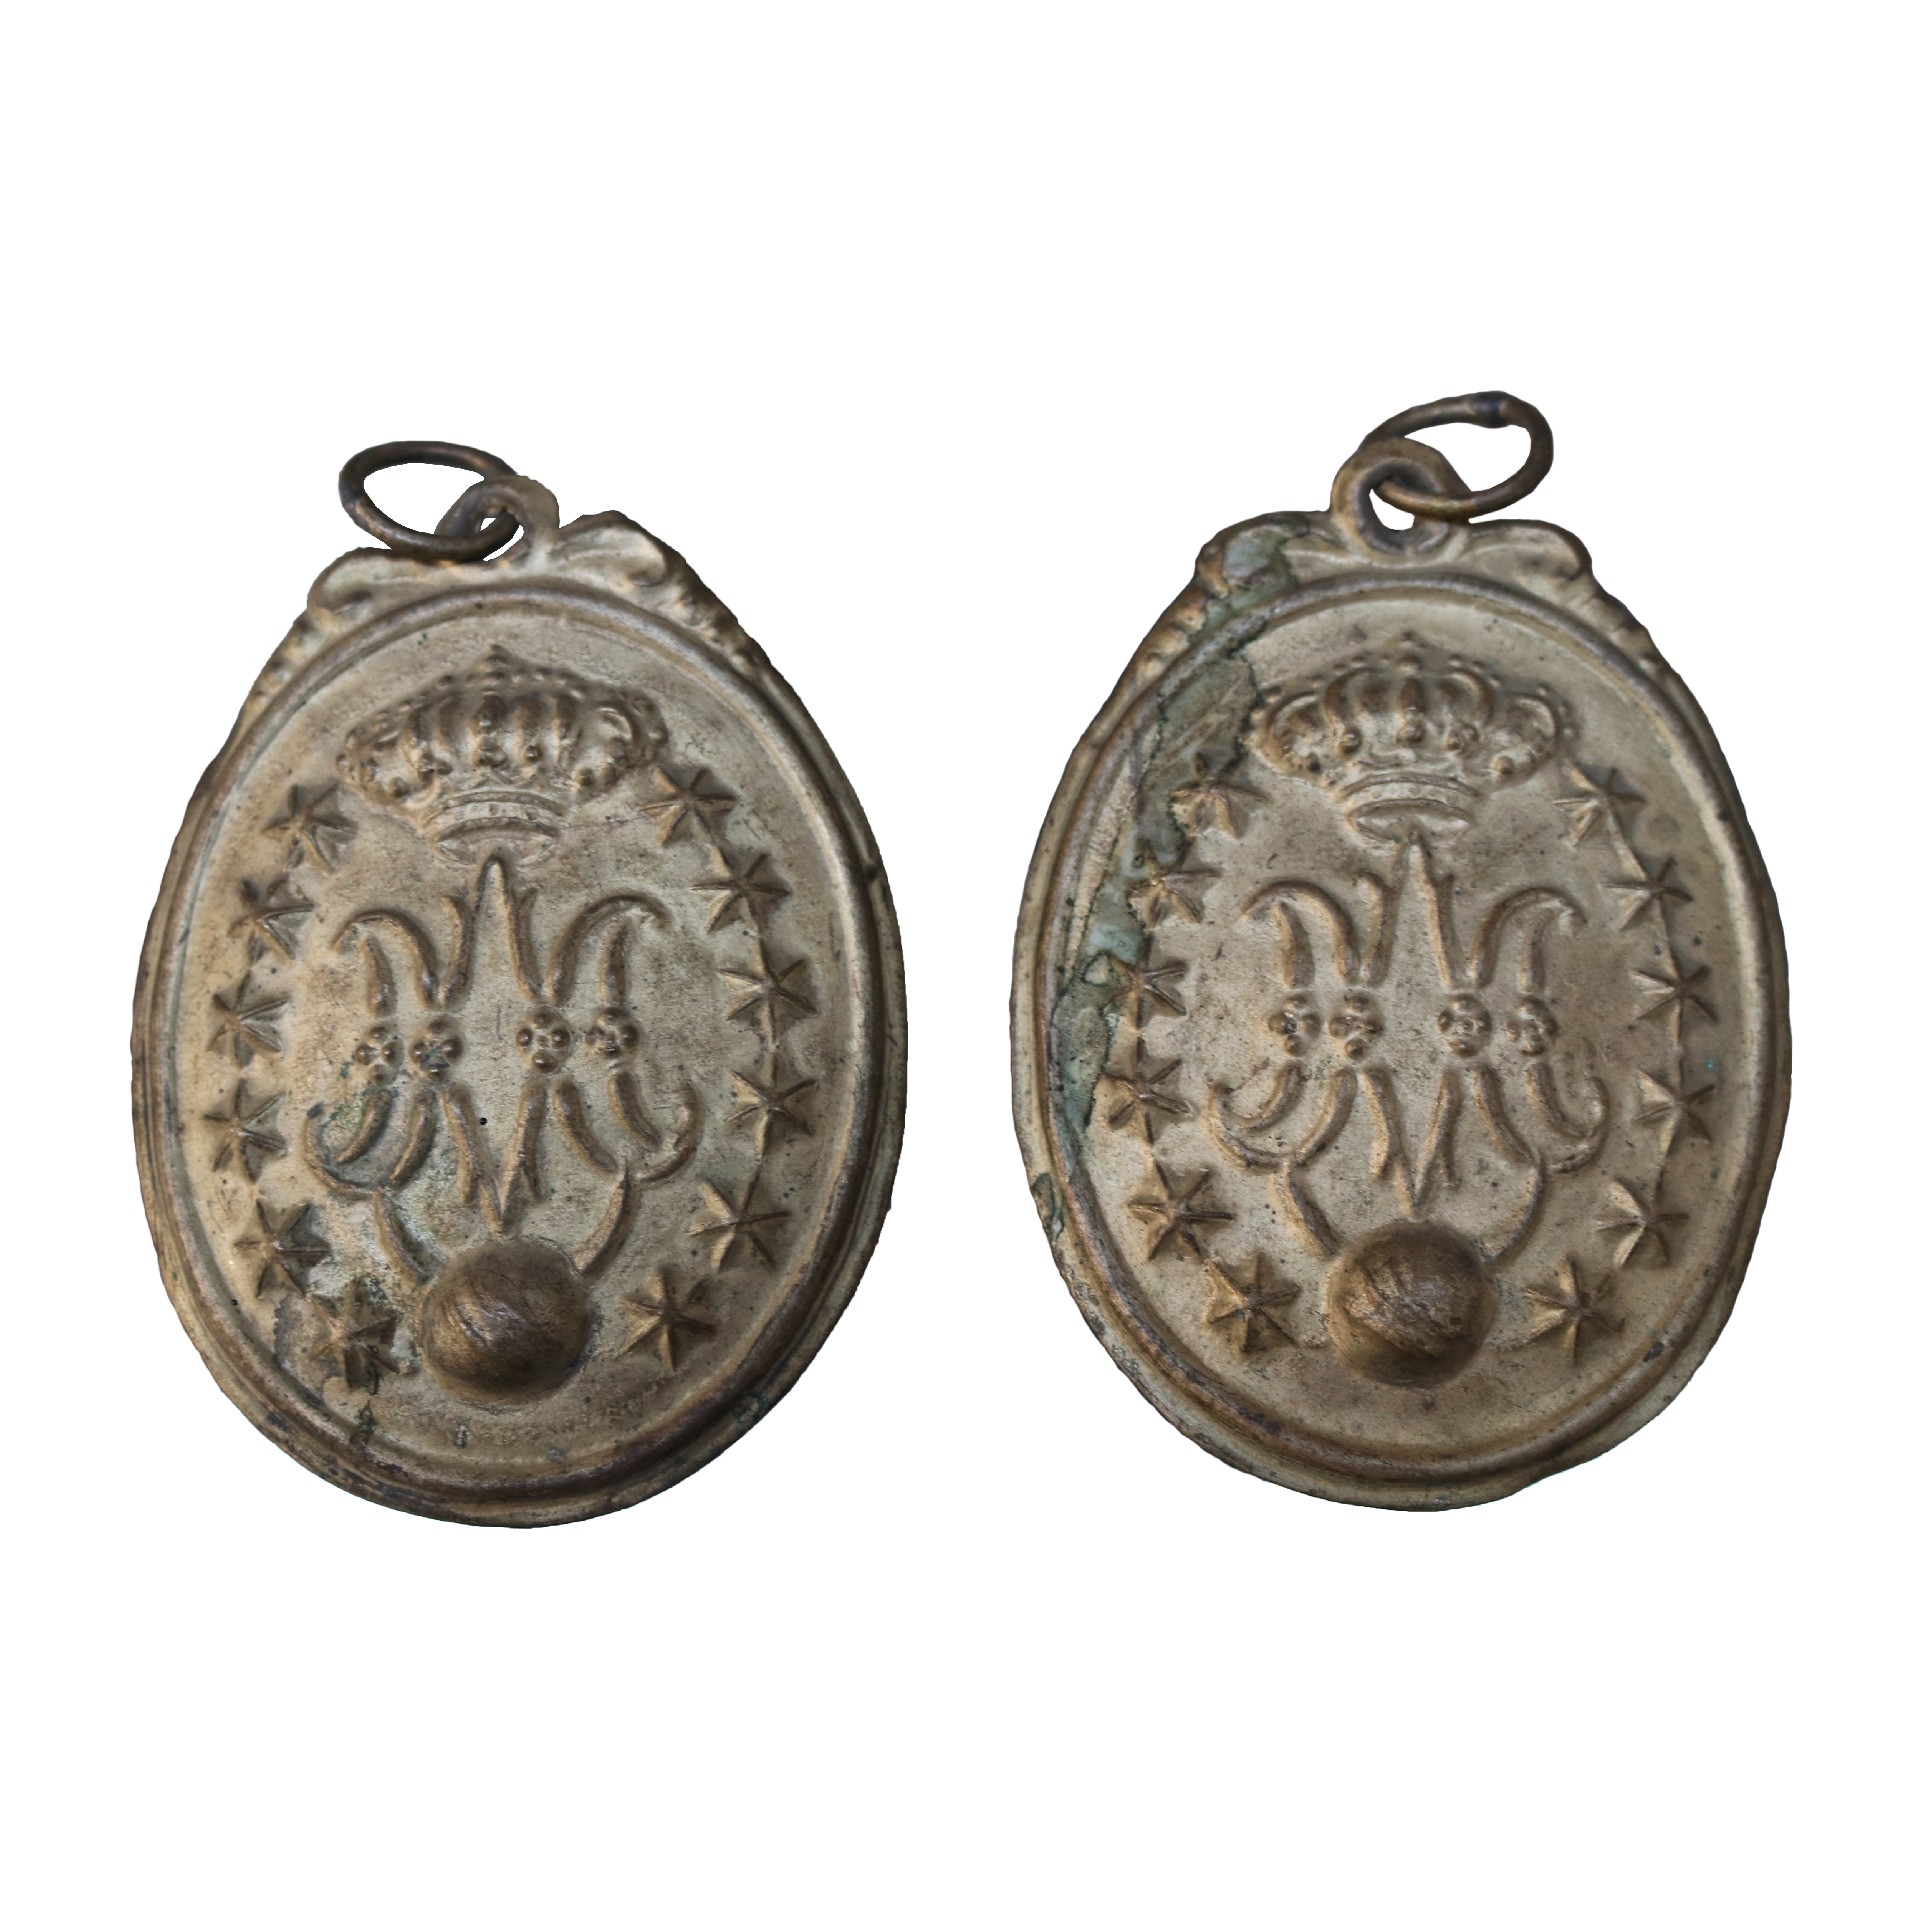 Coppia di antichi medaglioni ex voto. Epoca 1700. - Oggettistica - Oggettistica - Prodotti - Antichità Fiorillo